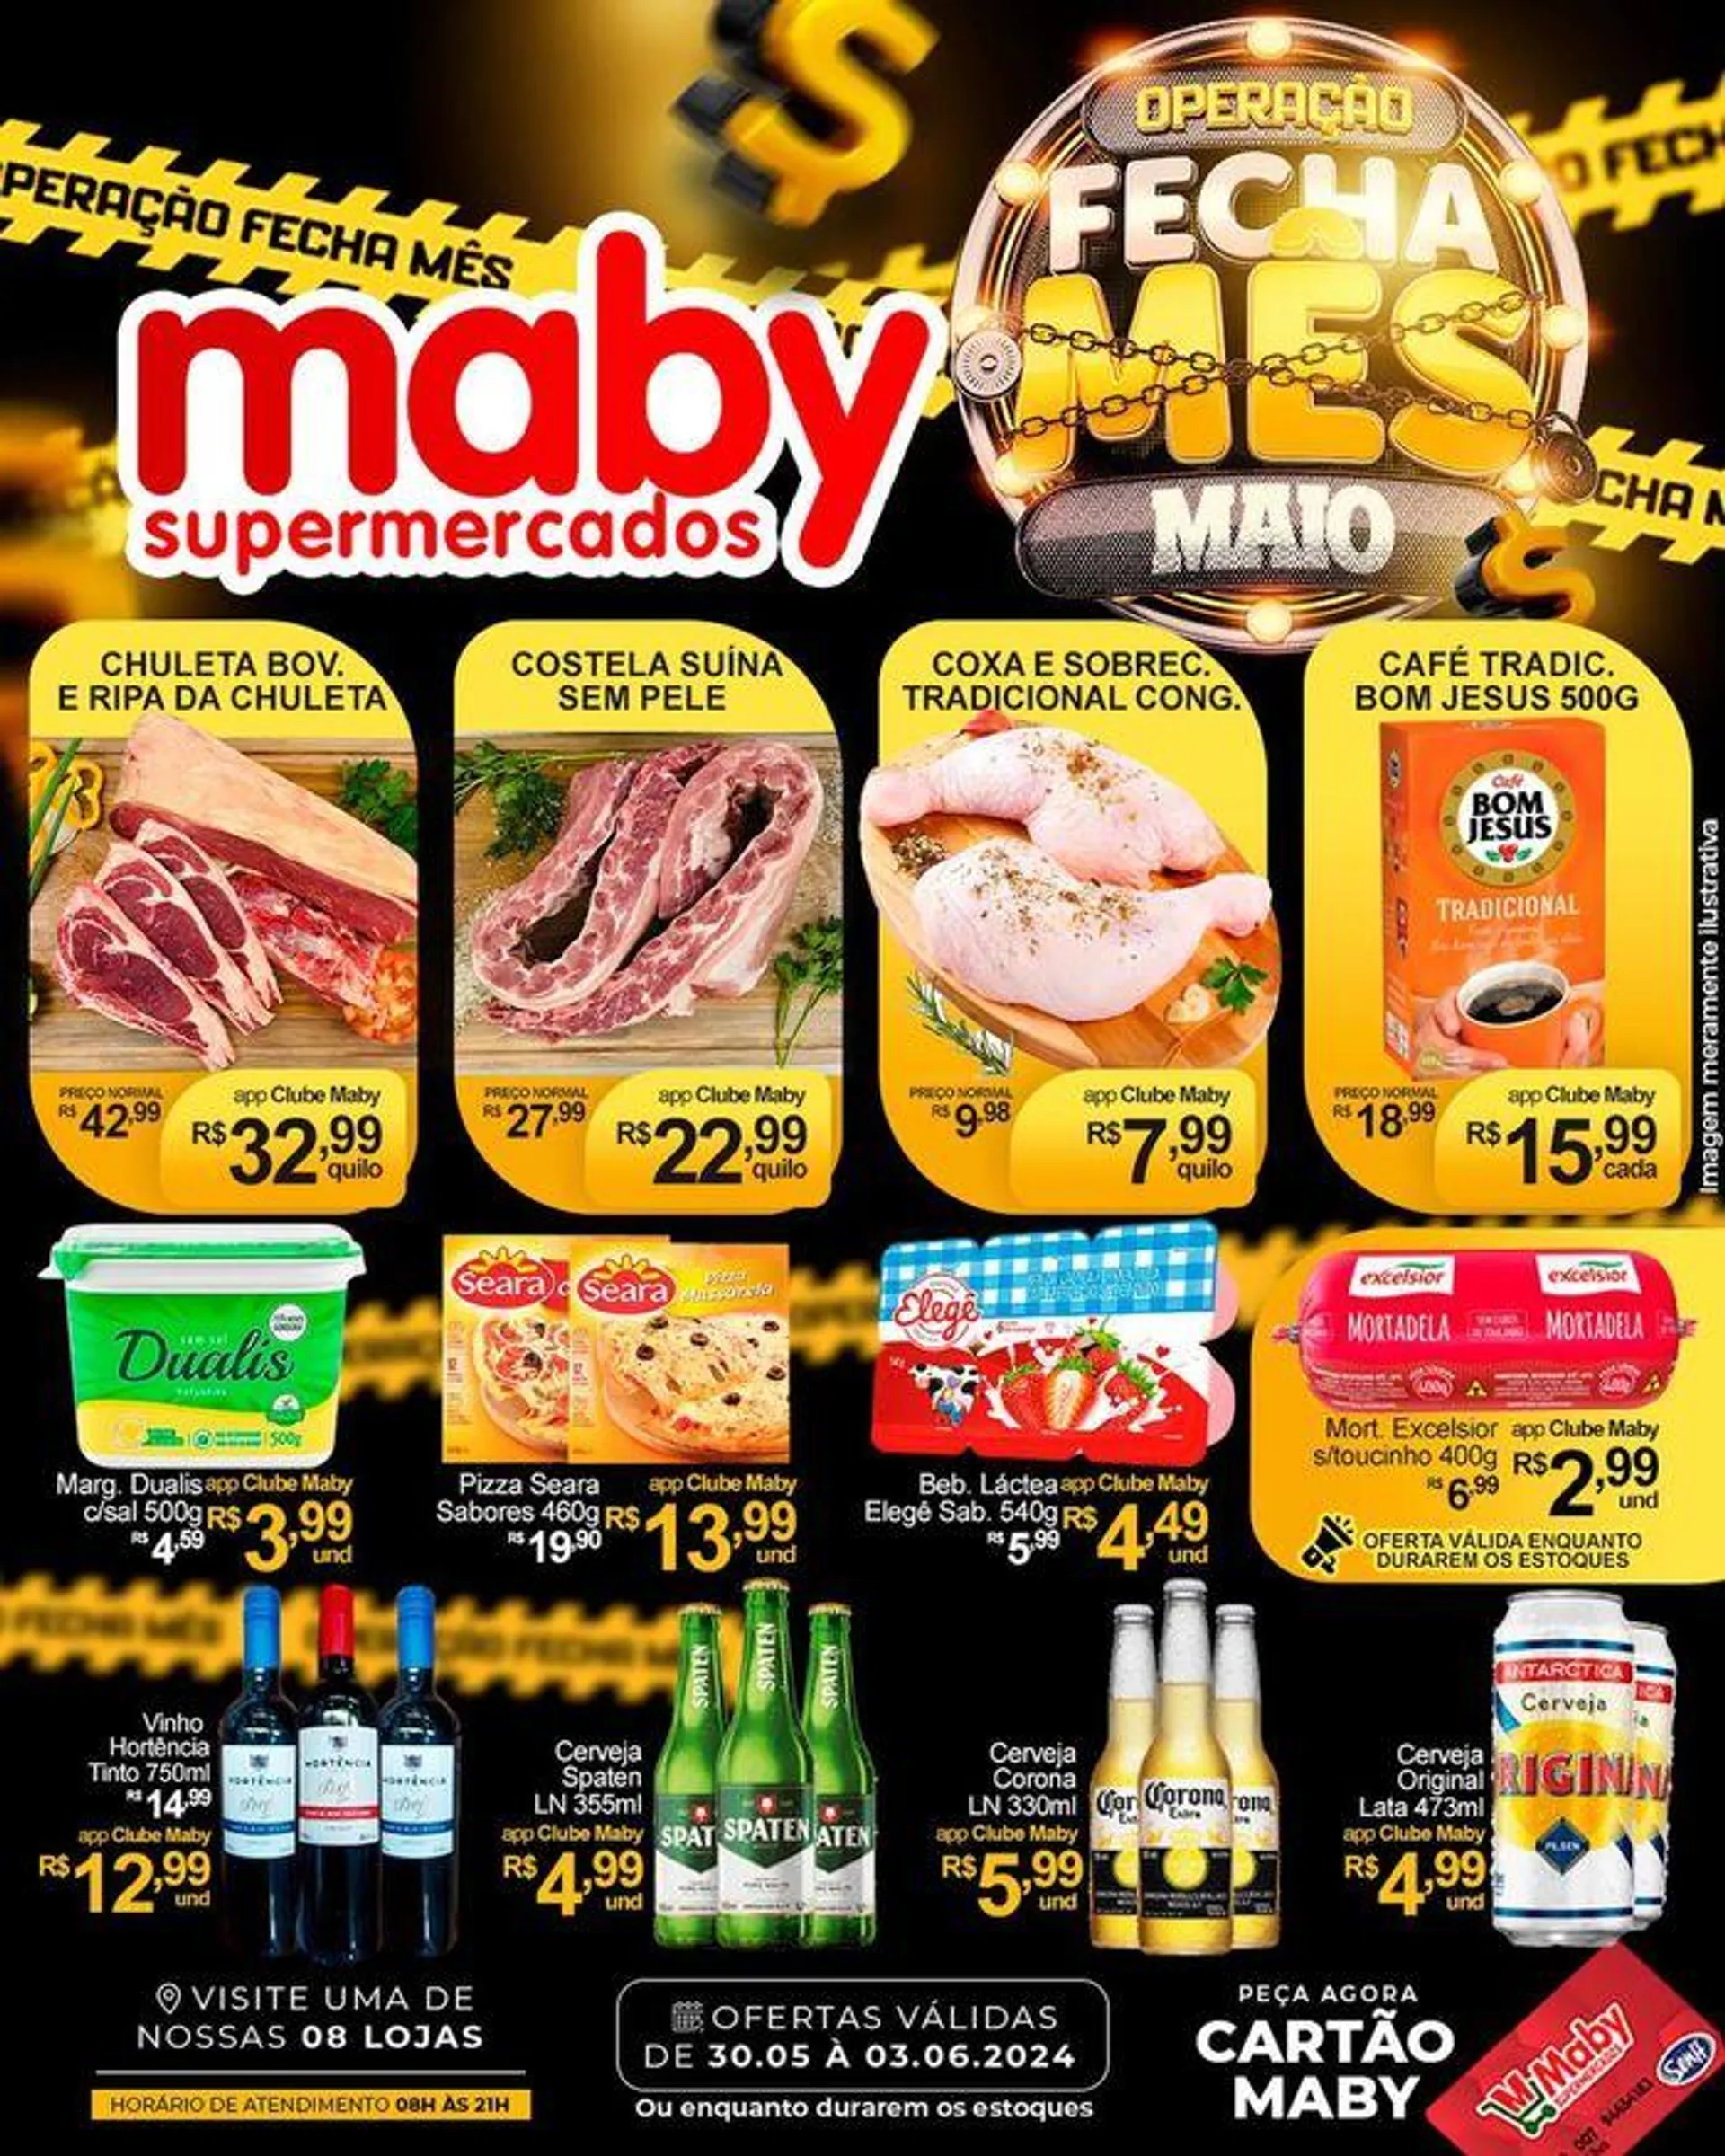 Ofertas Maby Supermercados - 1